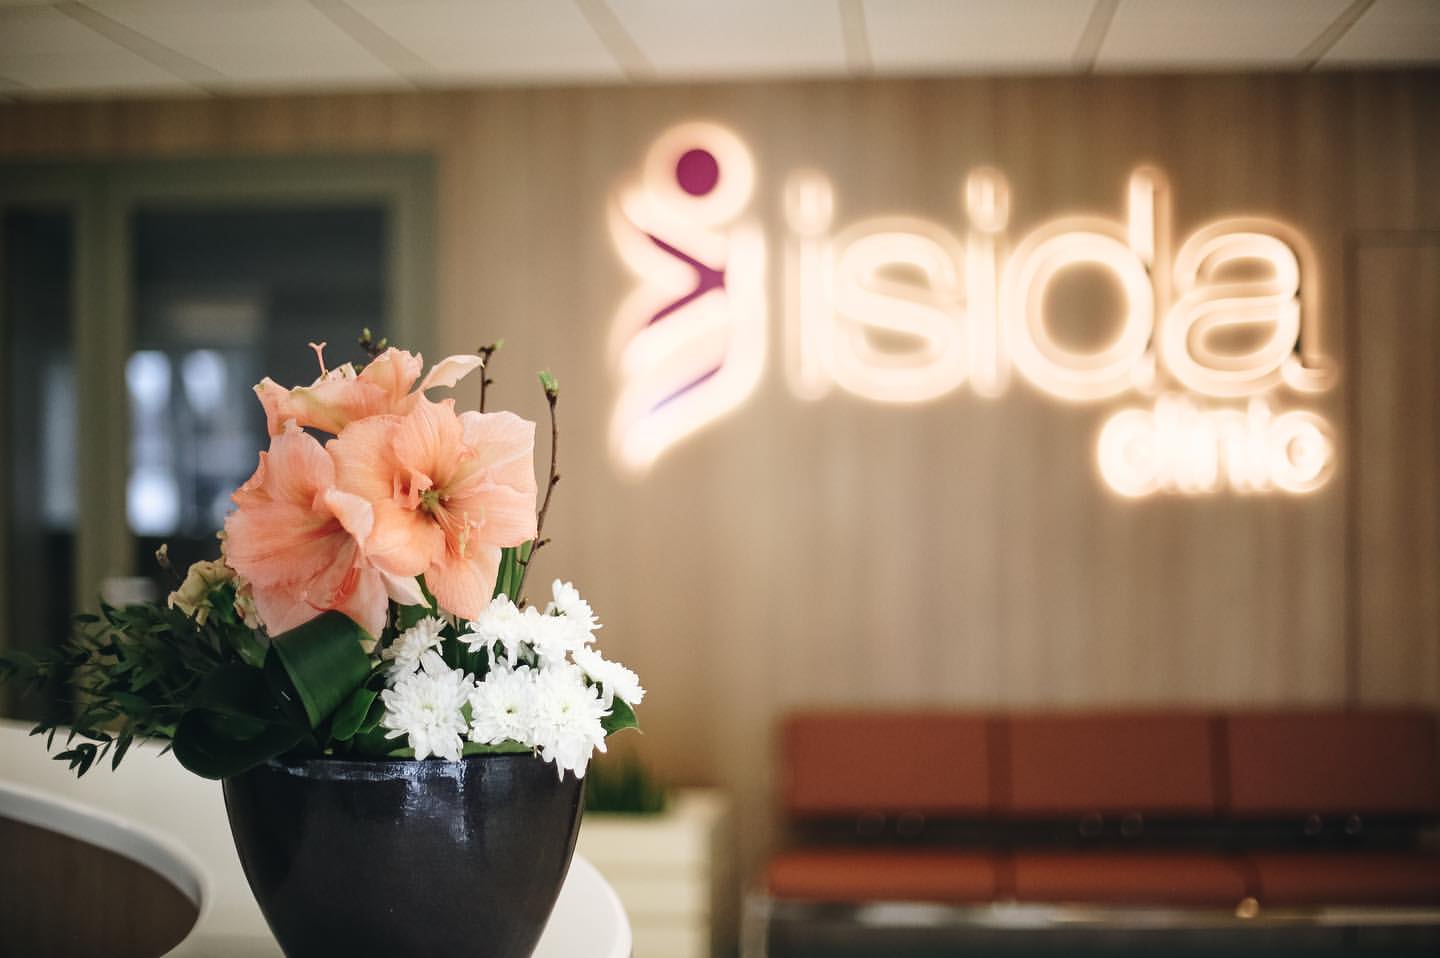 ISIDA Clinic